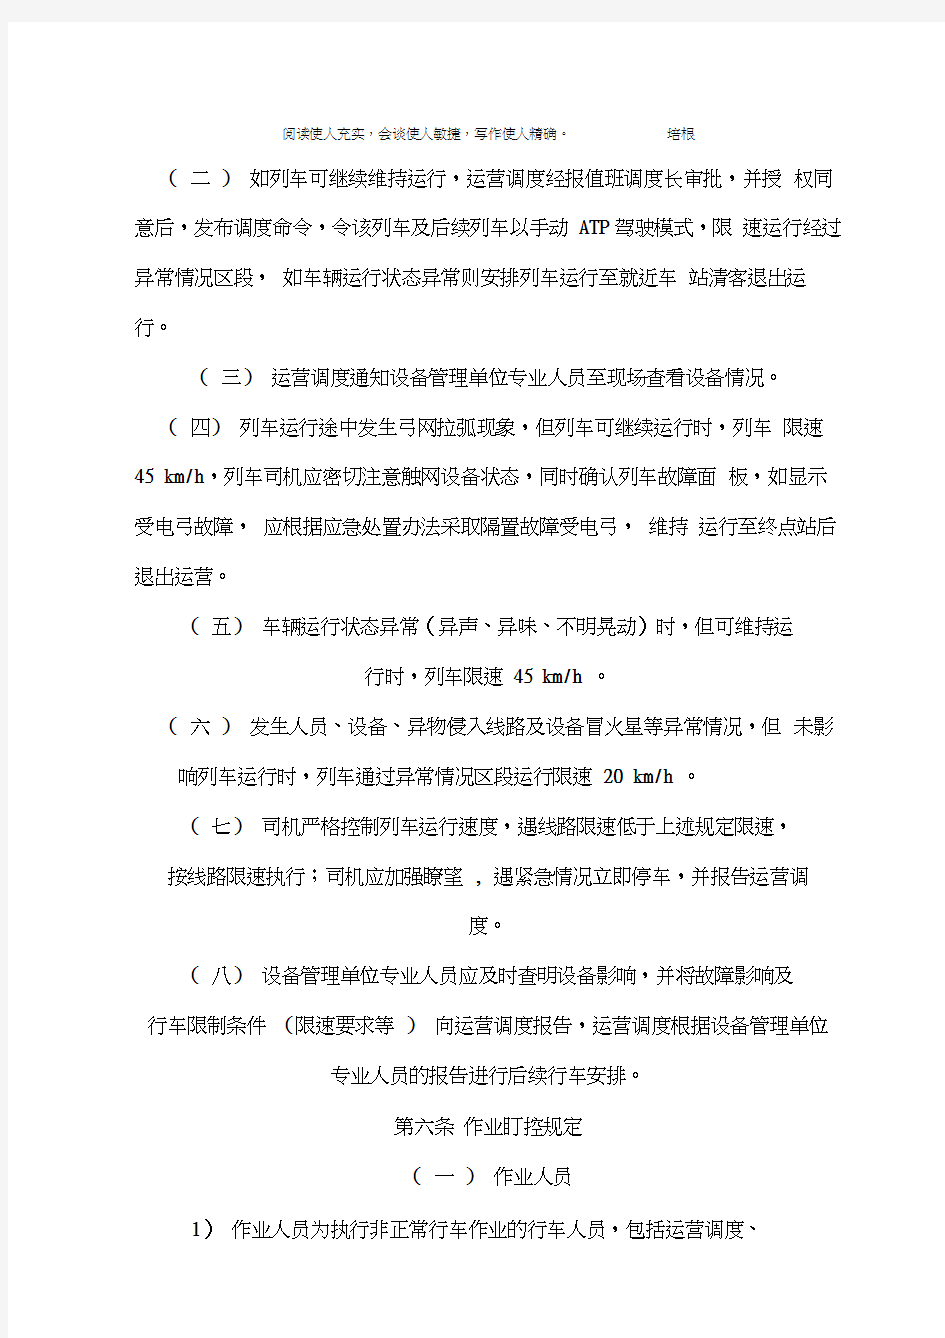 上海轨道交通非正常行车作业管理办法1.0版车站岗位实施细则